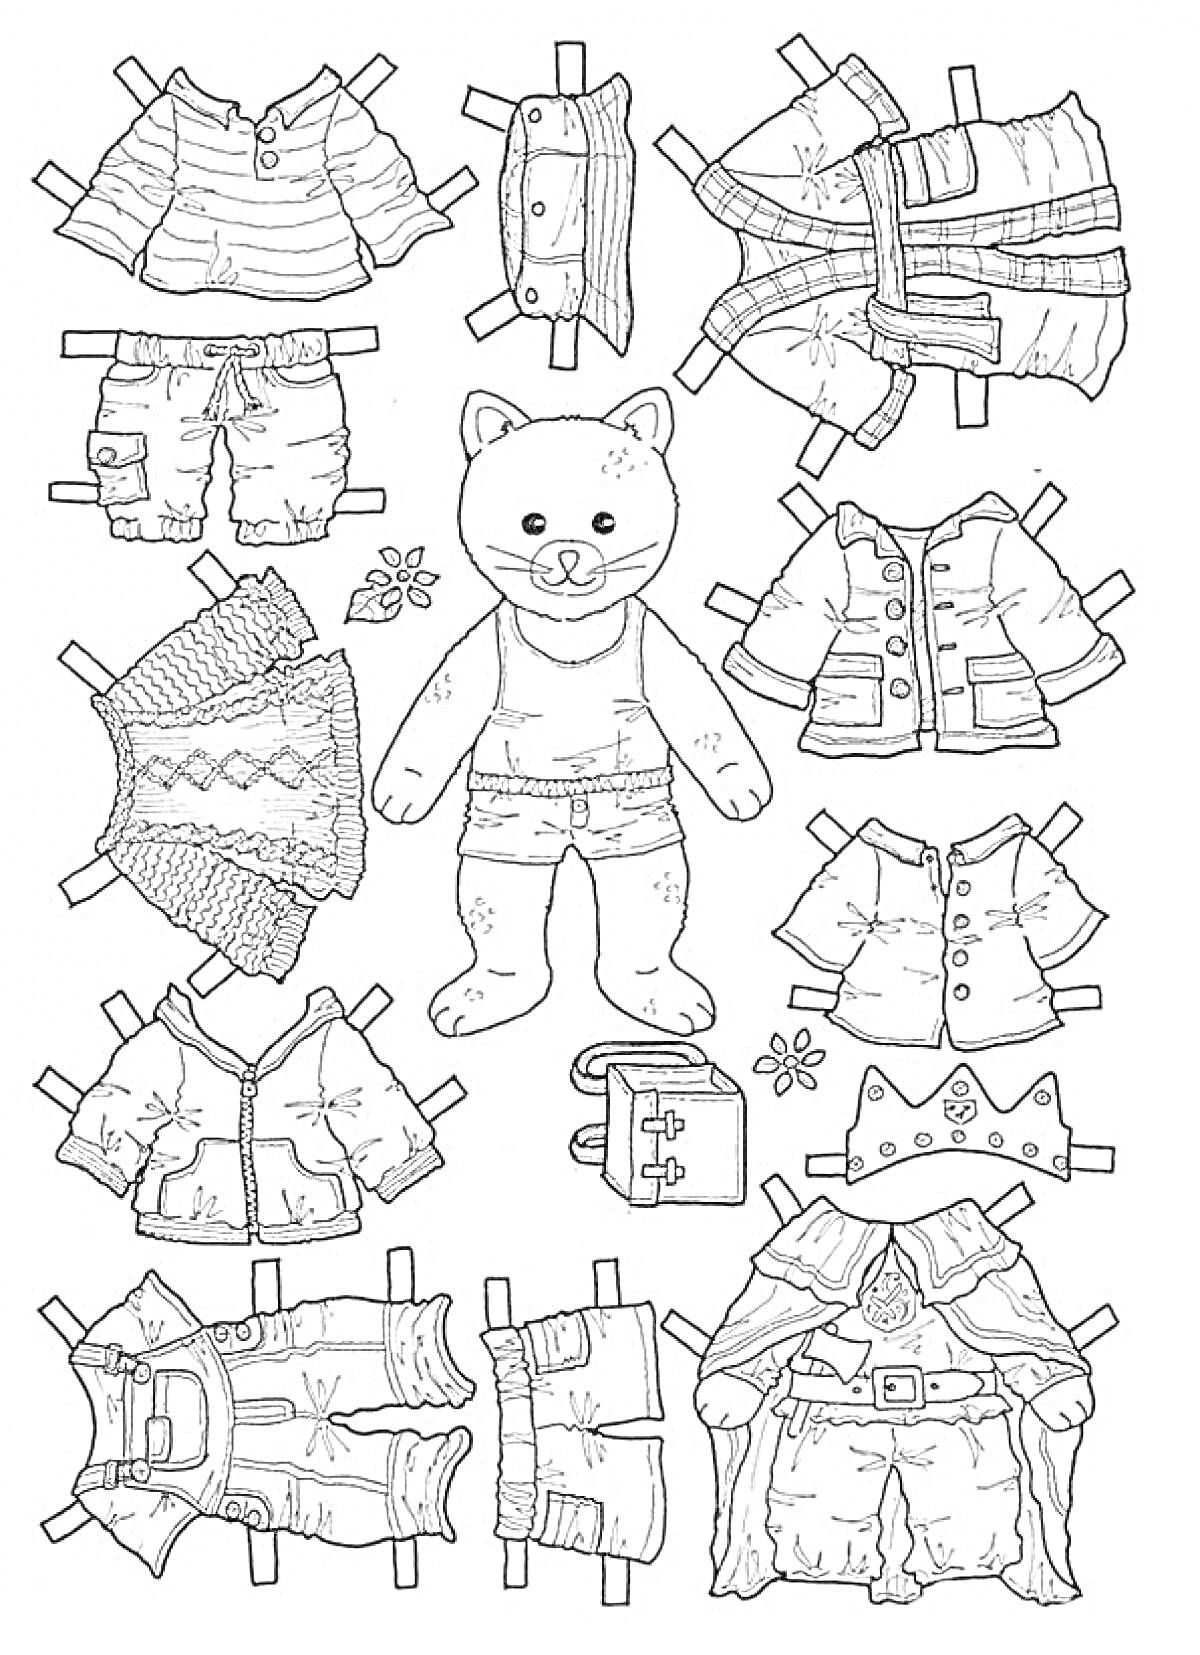 Бумажная кукла - медведь с разнообразной одеждой (жилетка, рубашка, шорты, плащ, куртка, акссесуары)